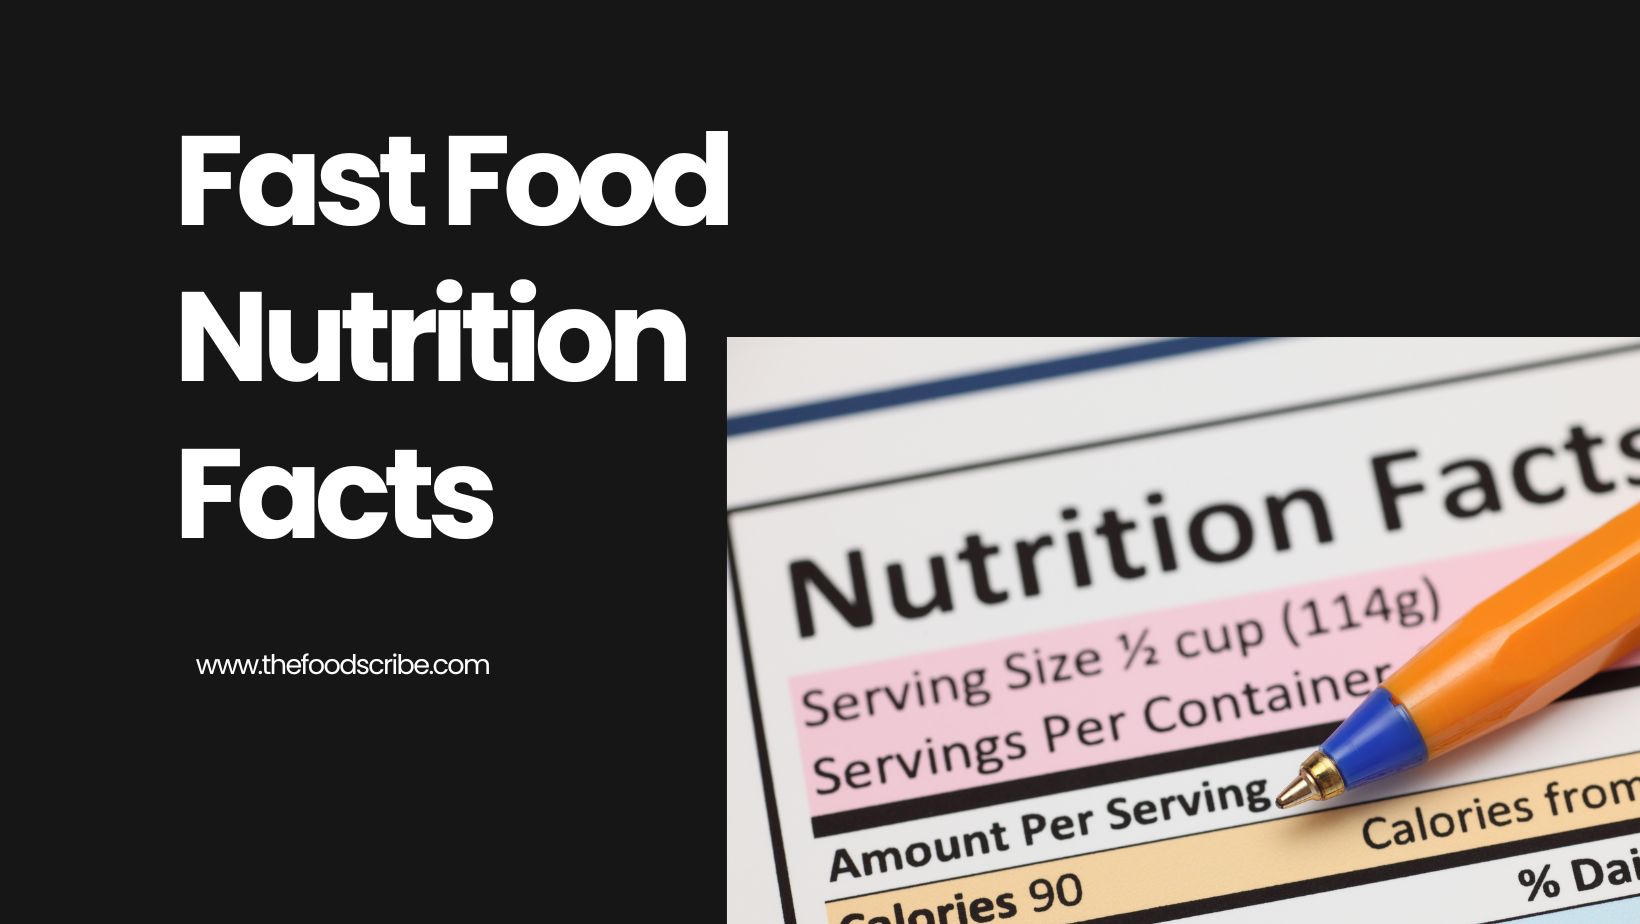 Fast Food Nutrition Facts for Triple Decker Sandwich in Arbys